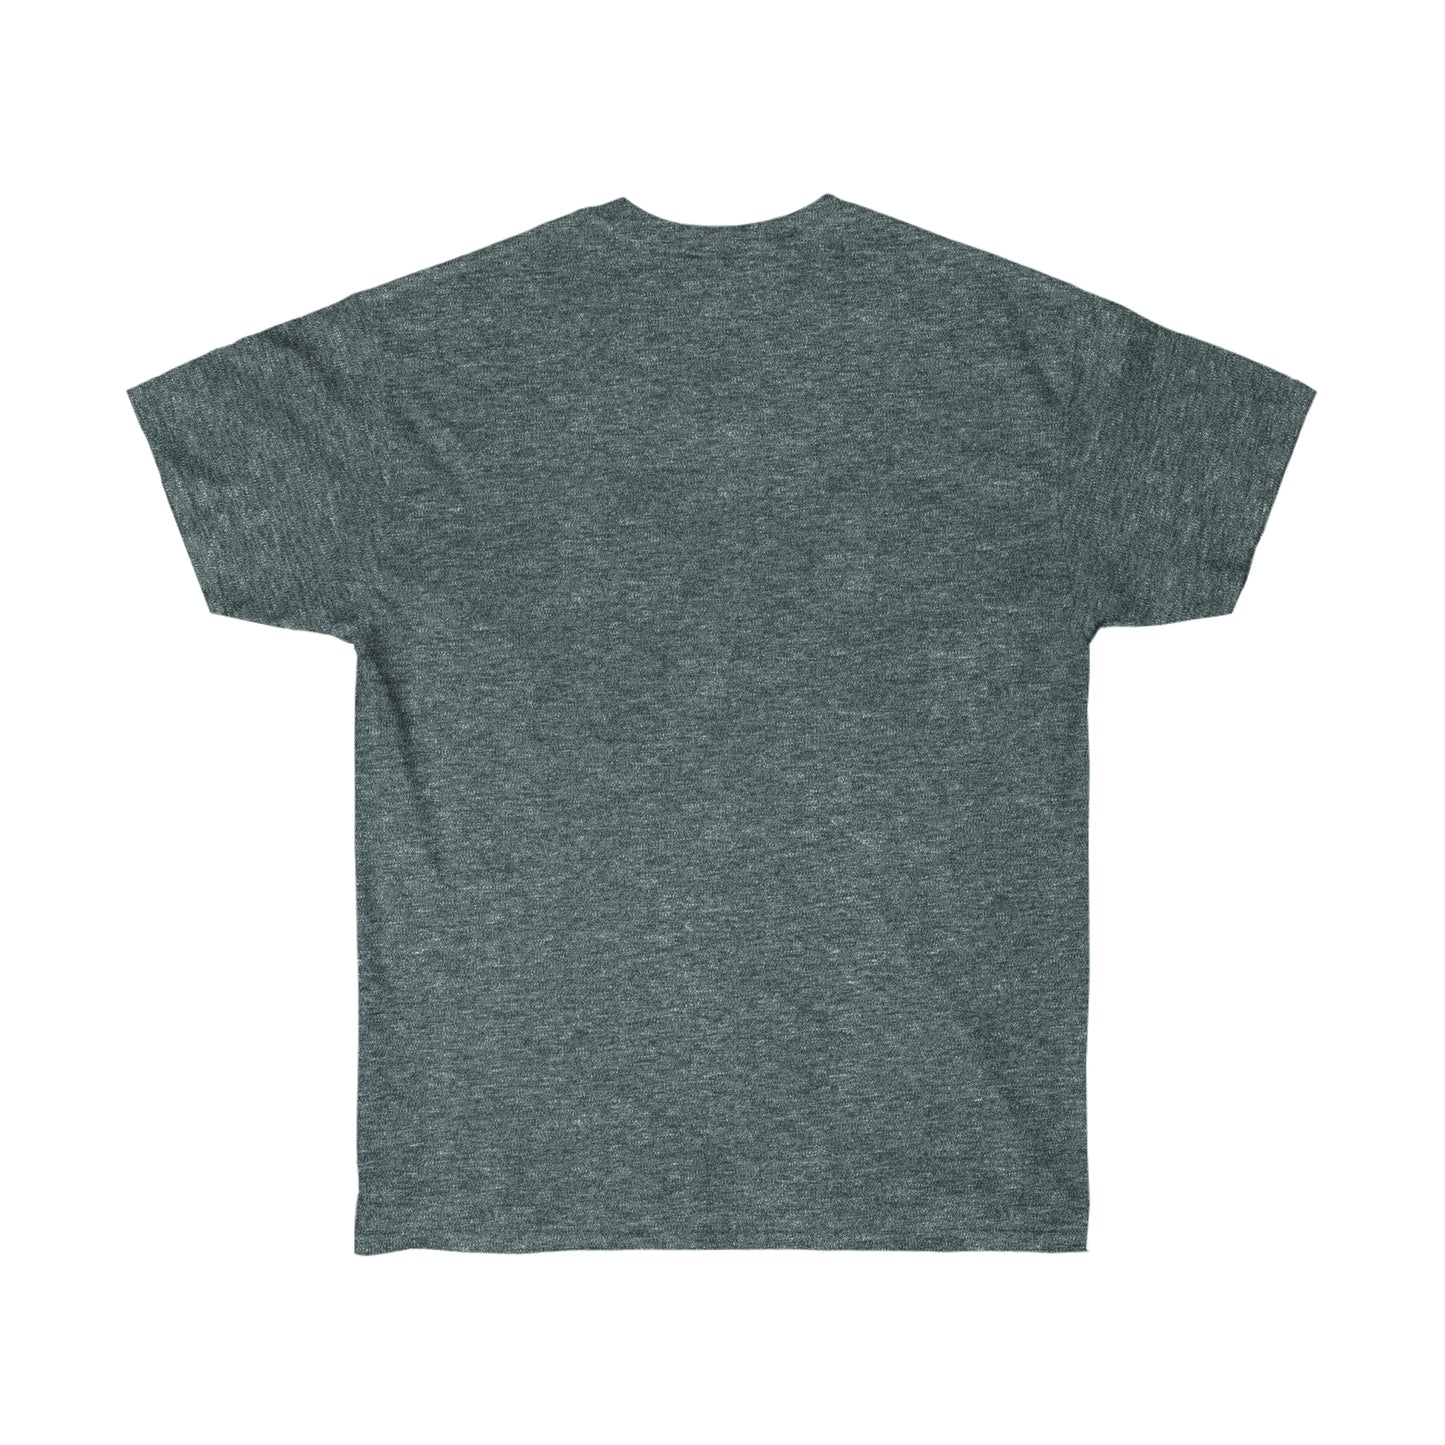 The Future Teacher Unisex Garment-Dyed T-shirt